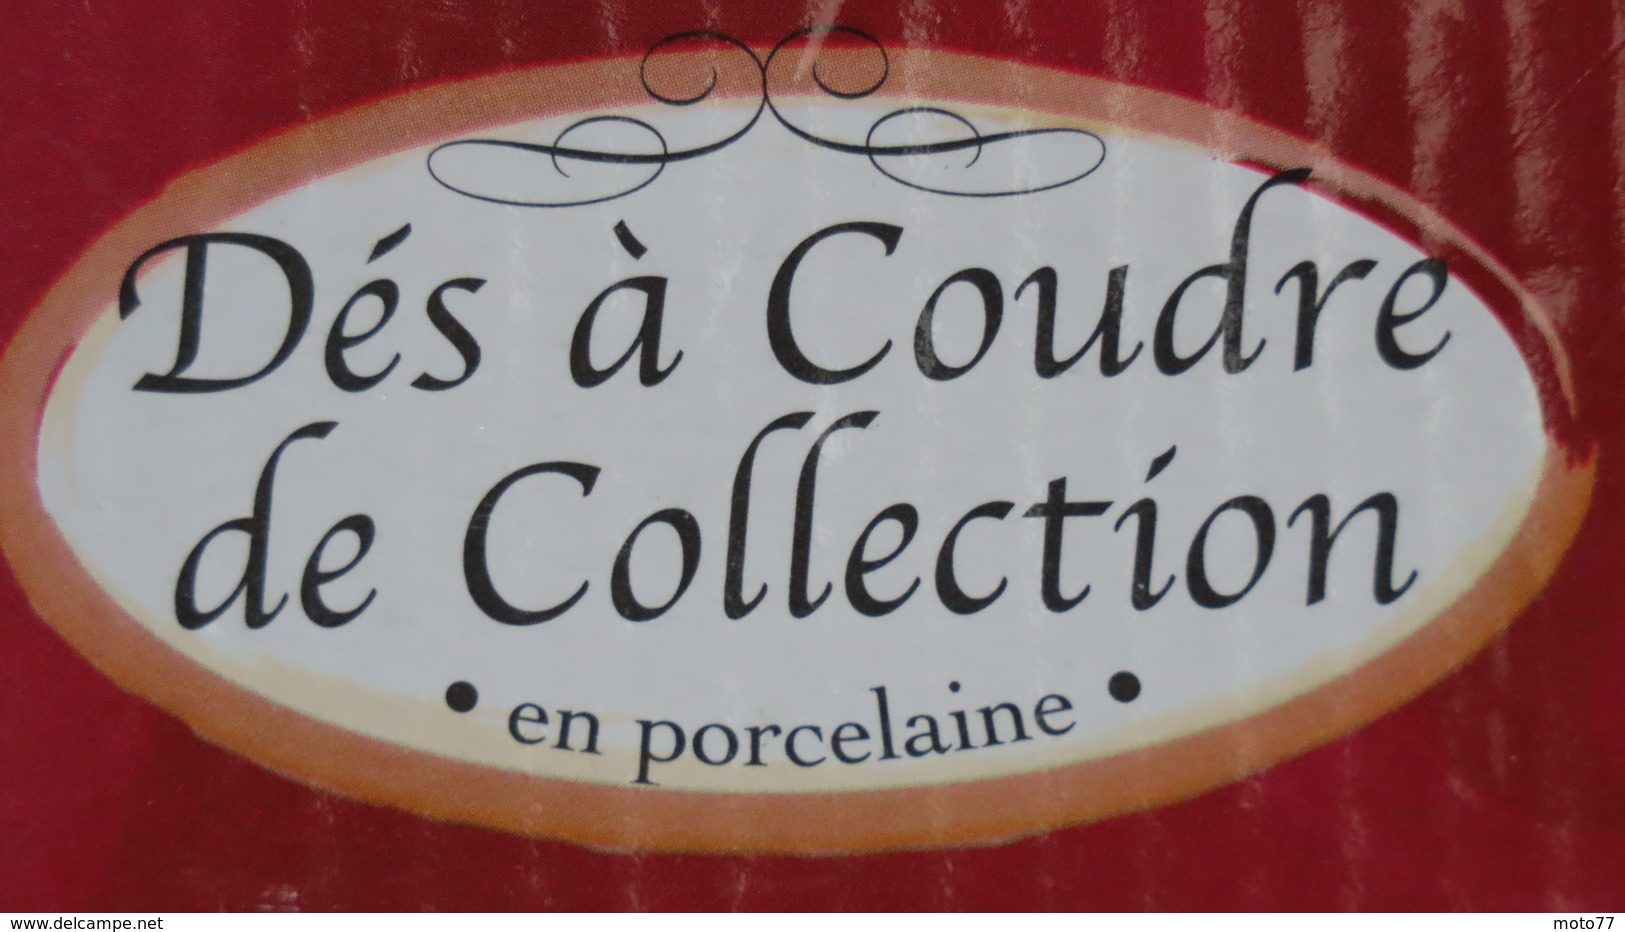 Lot de 18 Dés à Coudre de COLLECTION en PORCELAINE par les Editions ATLAS - Paris Lille Toulouse Calvi Beaune Nîmes...